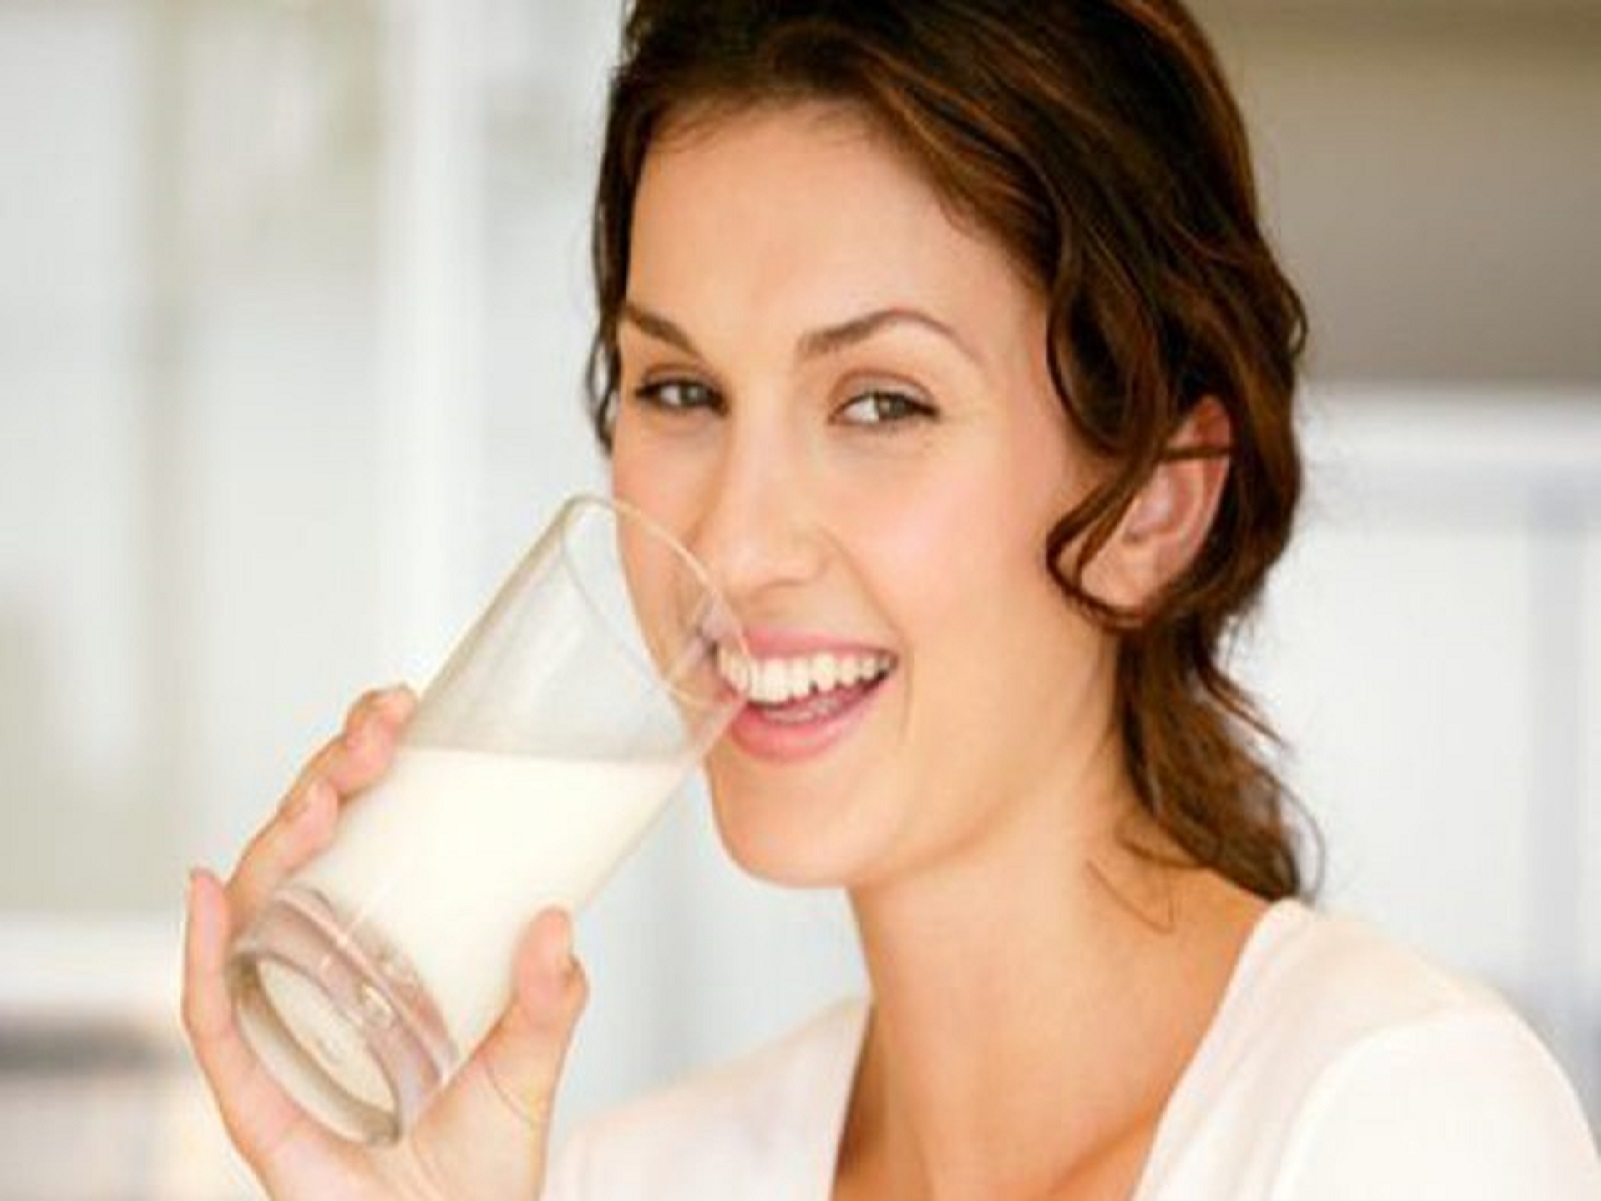 Tiêu chí quan trọng giúp chọn sữa tươi tốt cho người bệnh tiểu đường